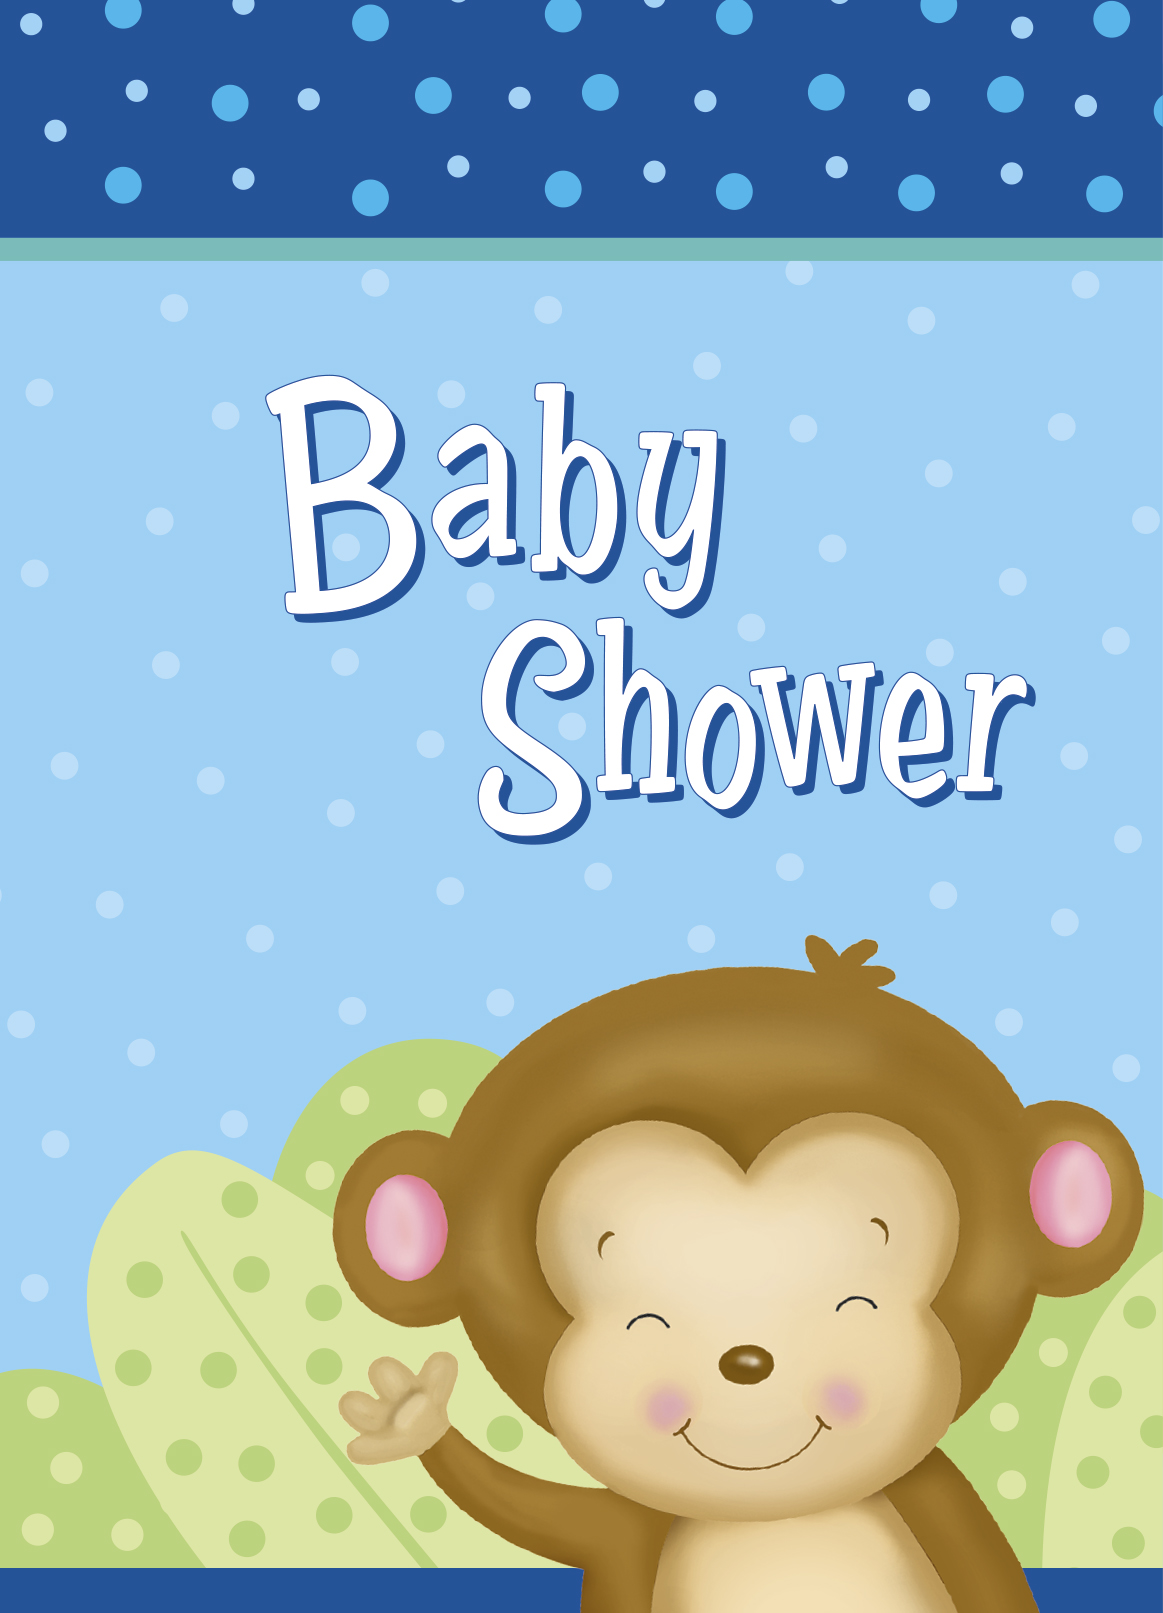 Boy Monkey Baby Shower Invitations (8pk)